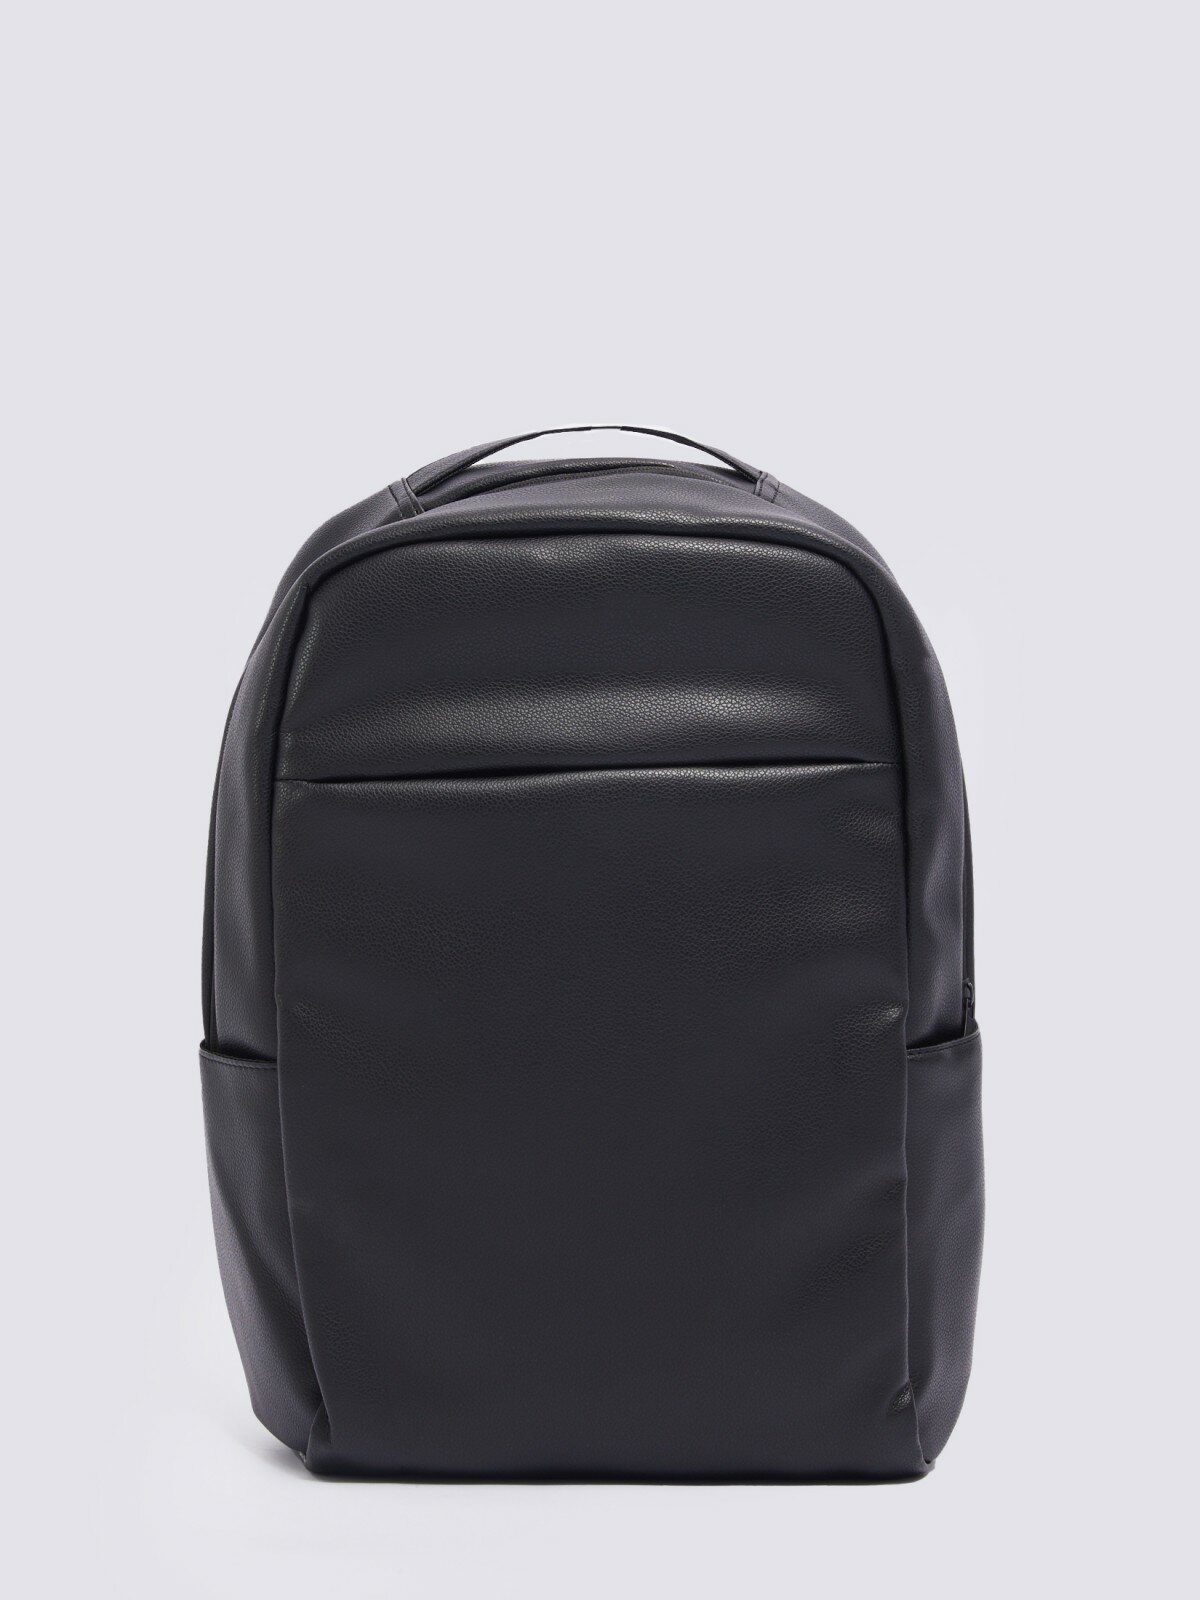 Городской рюкзак из экокожи с отделением для ноутбука/планшета, цвет черный, размер No_size 014119462035